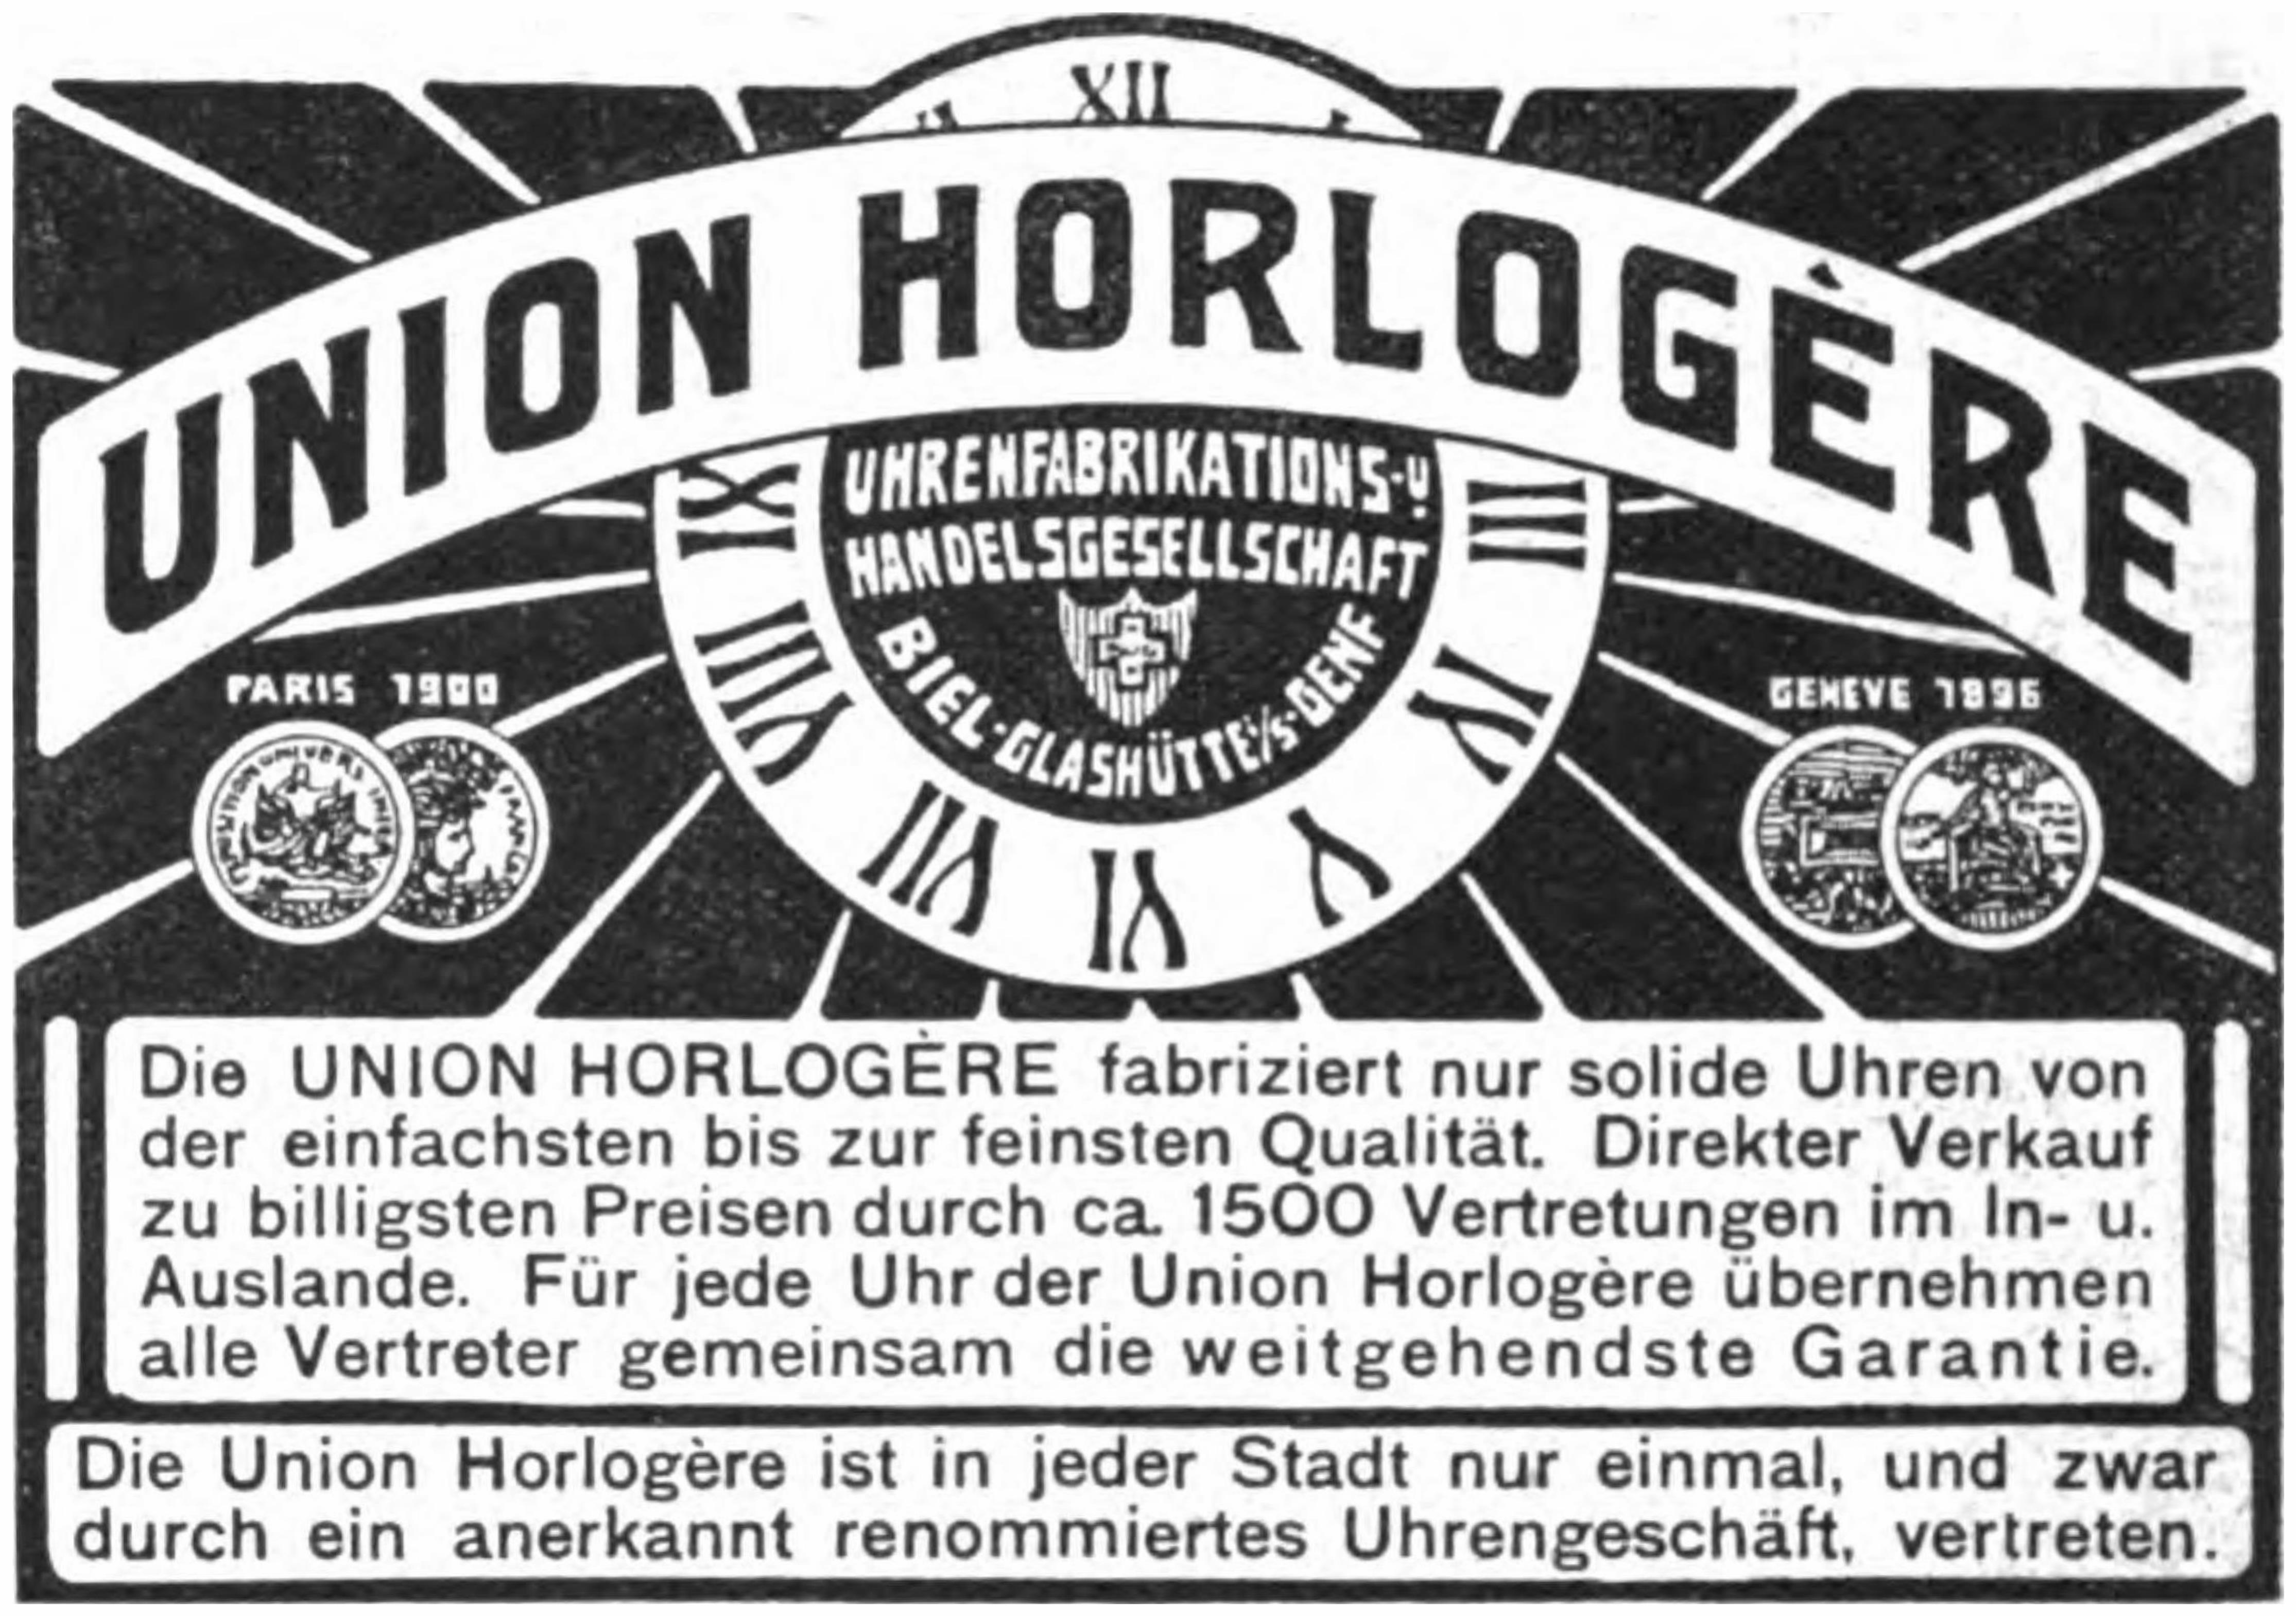 Union Horlogerie 1906 0.jpg